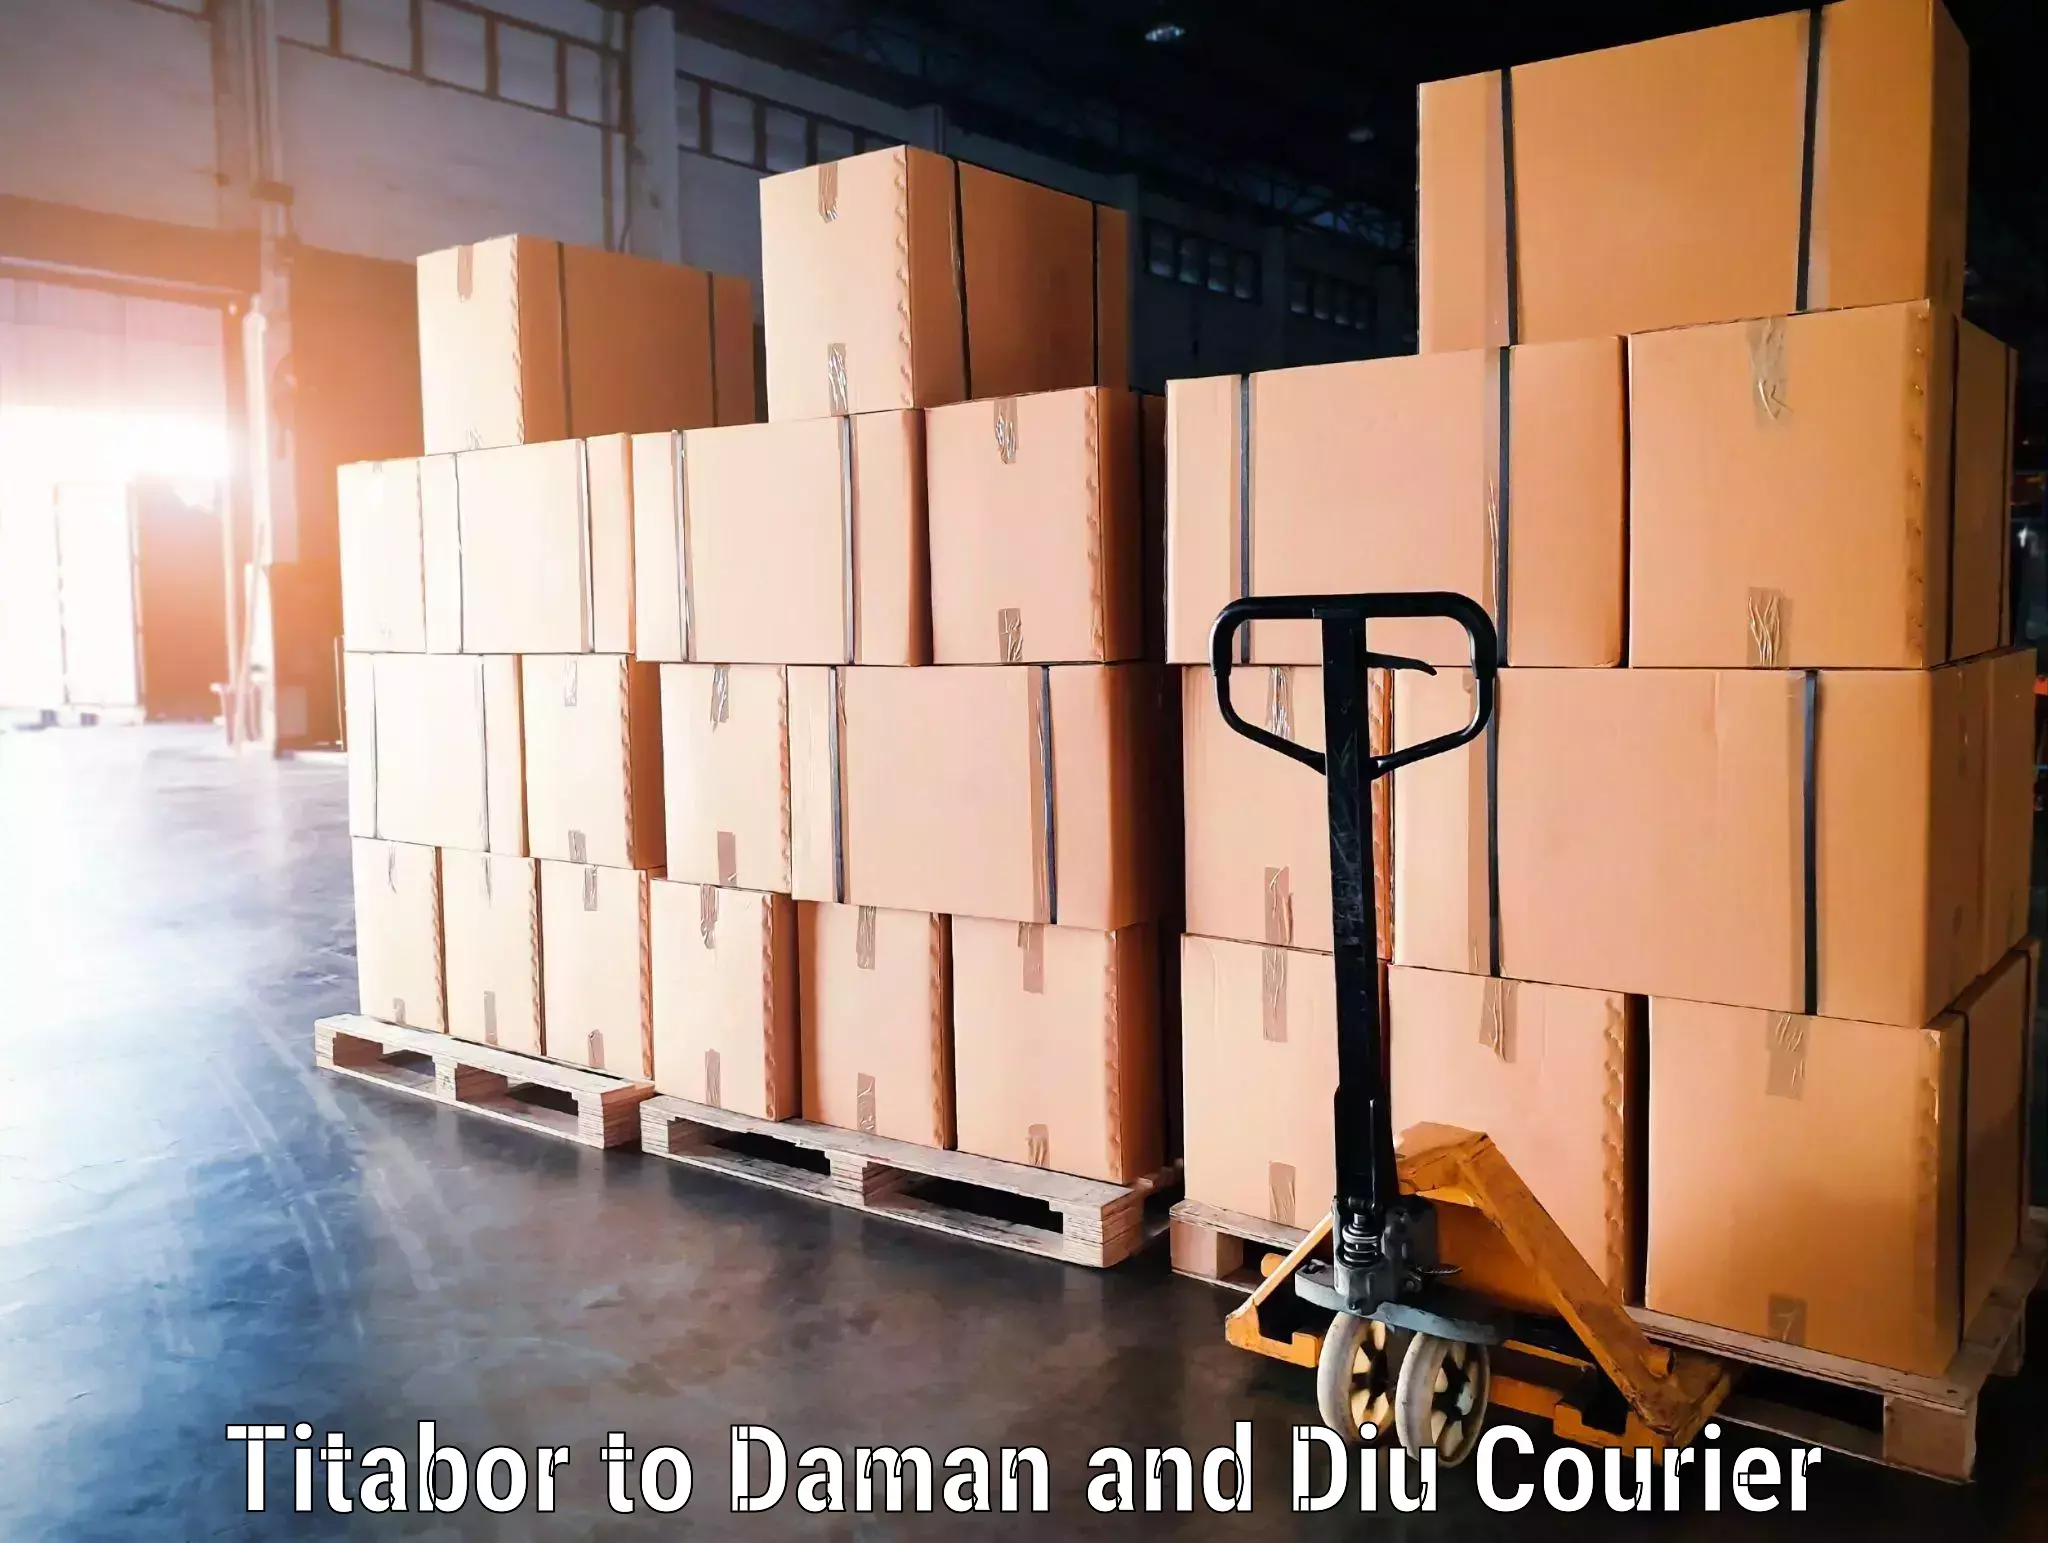 Door-to-door baggage service Titabor to Daman and Diu